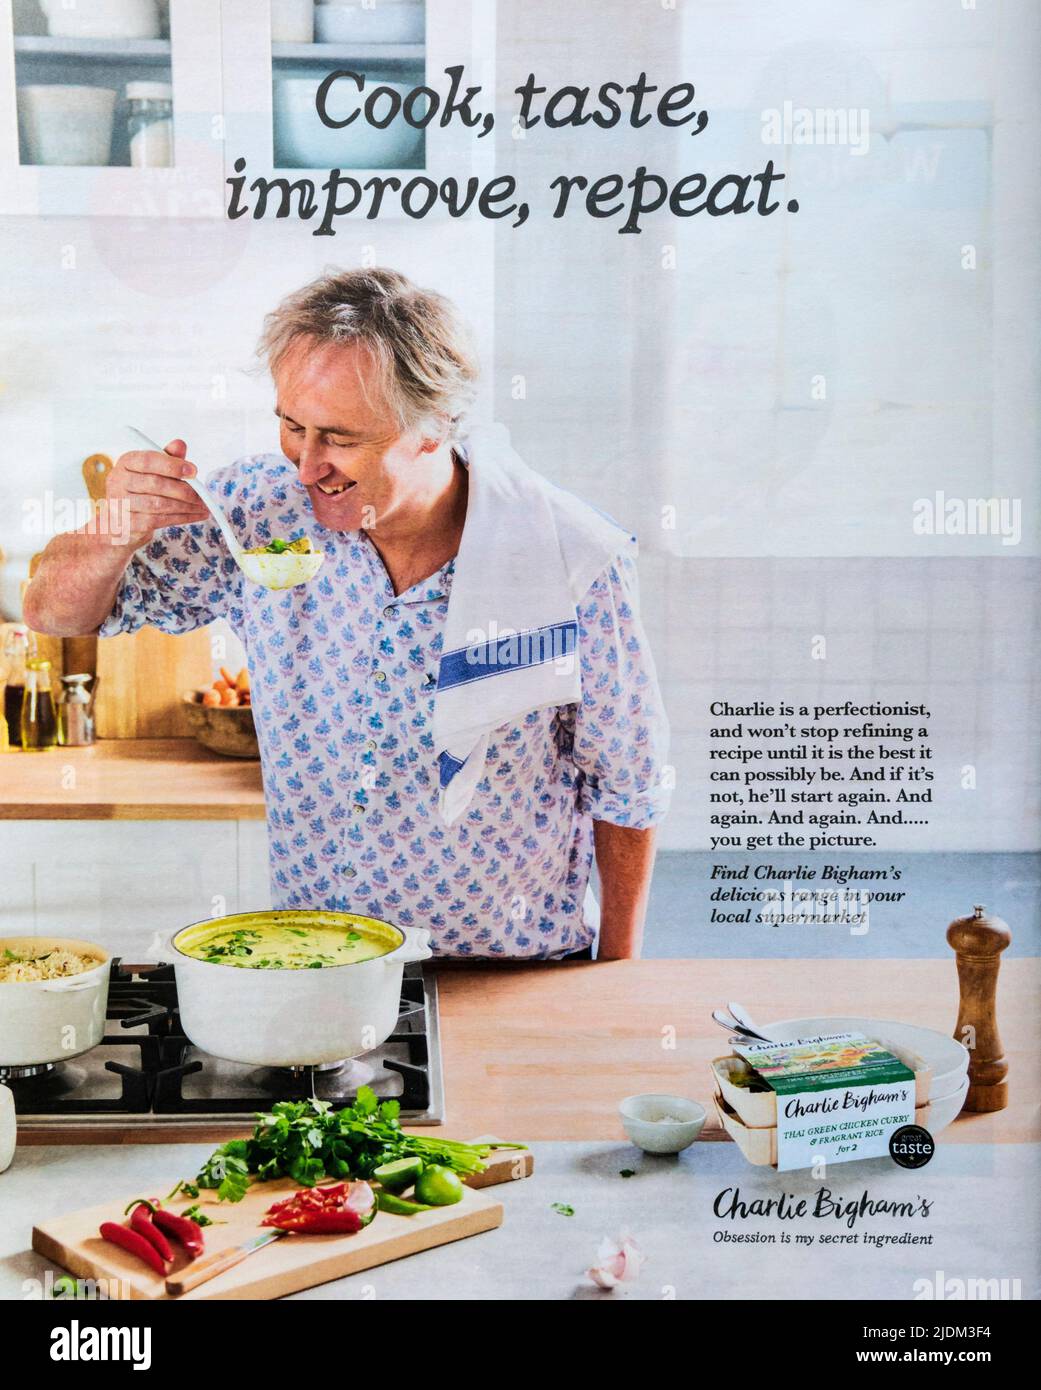 Revista de publicidad para las comidas preparadas de Charlie Bigham. Foto de stock